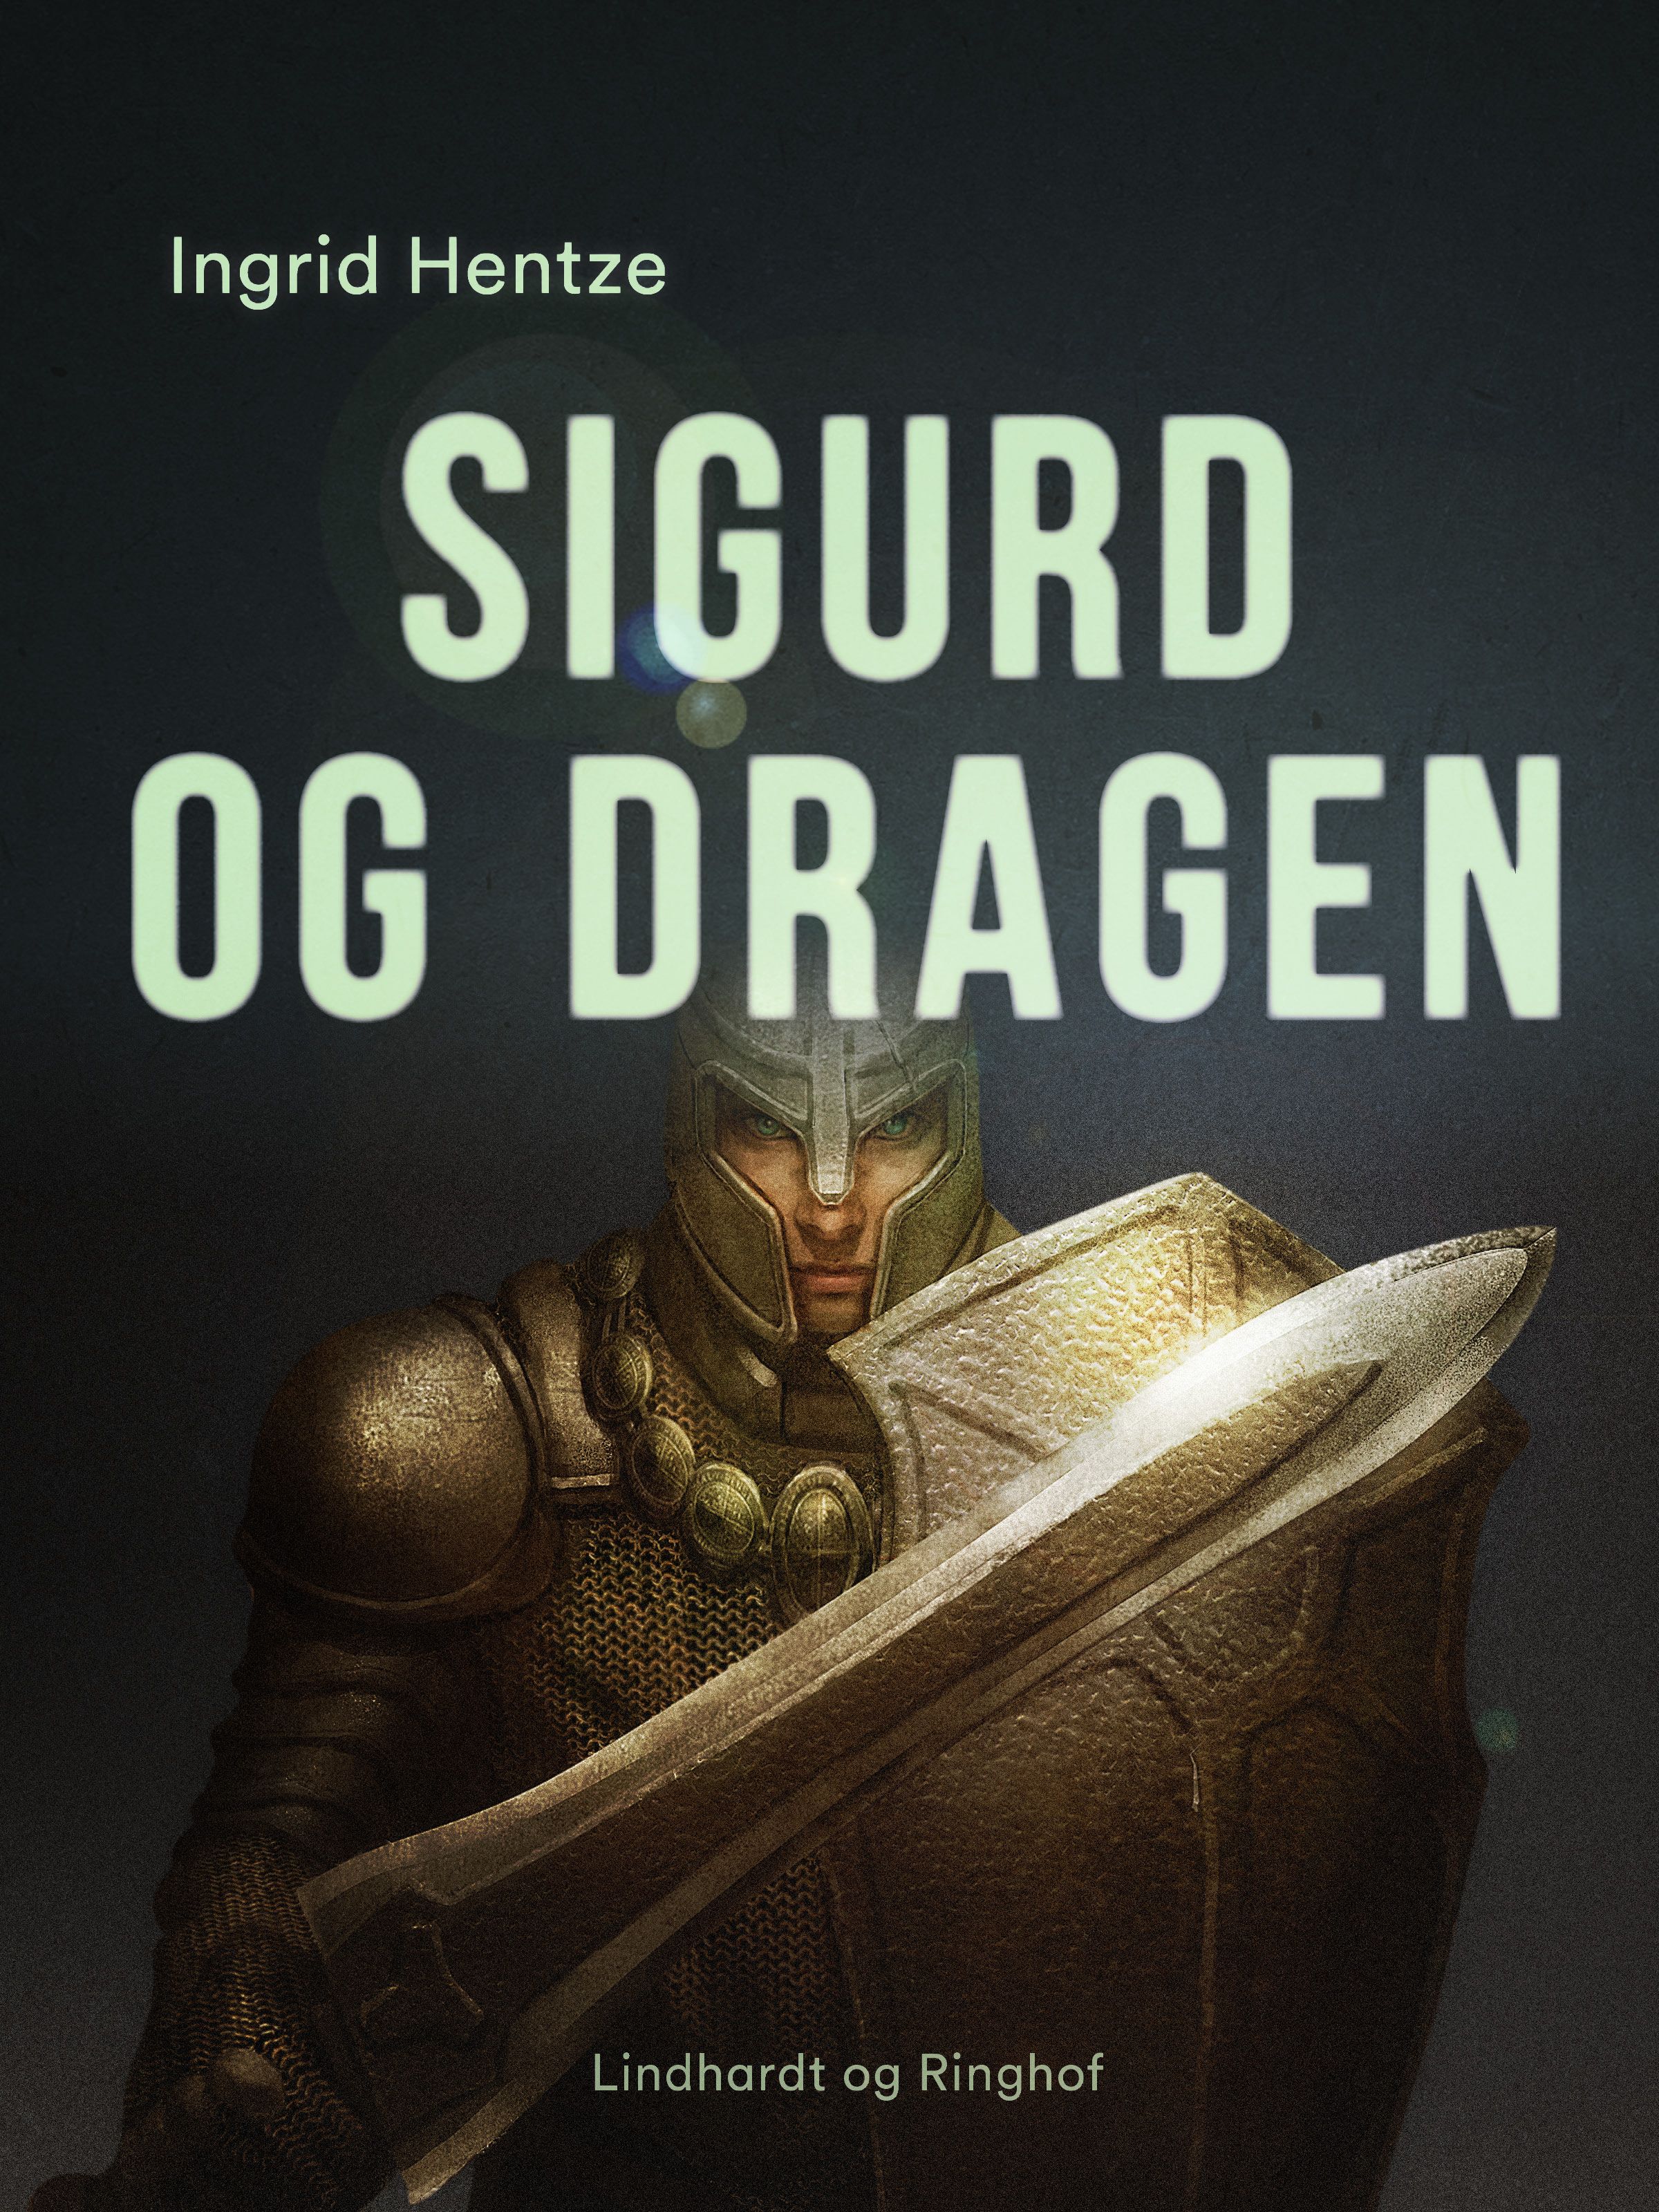 Sigurd og dragen, e-bok av Ingrid Hentze